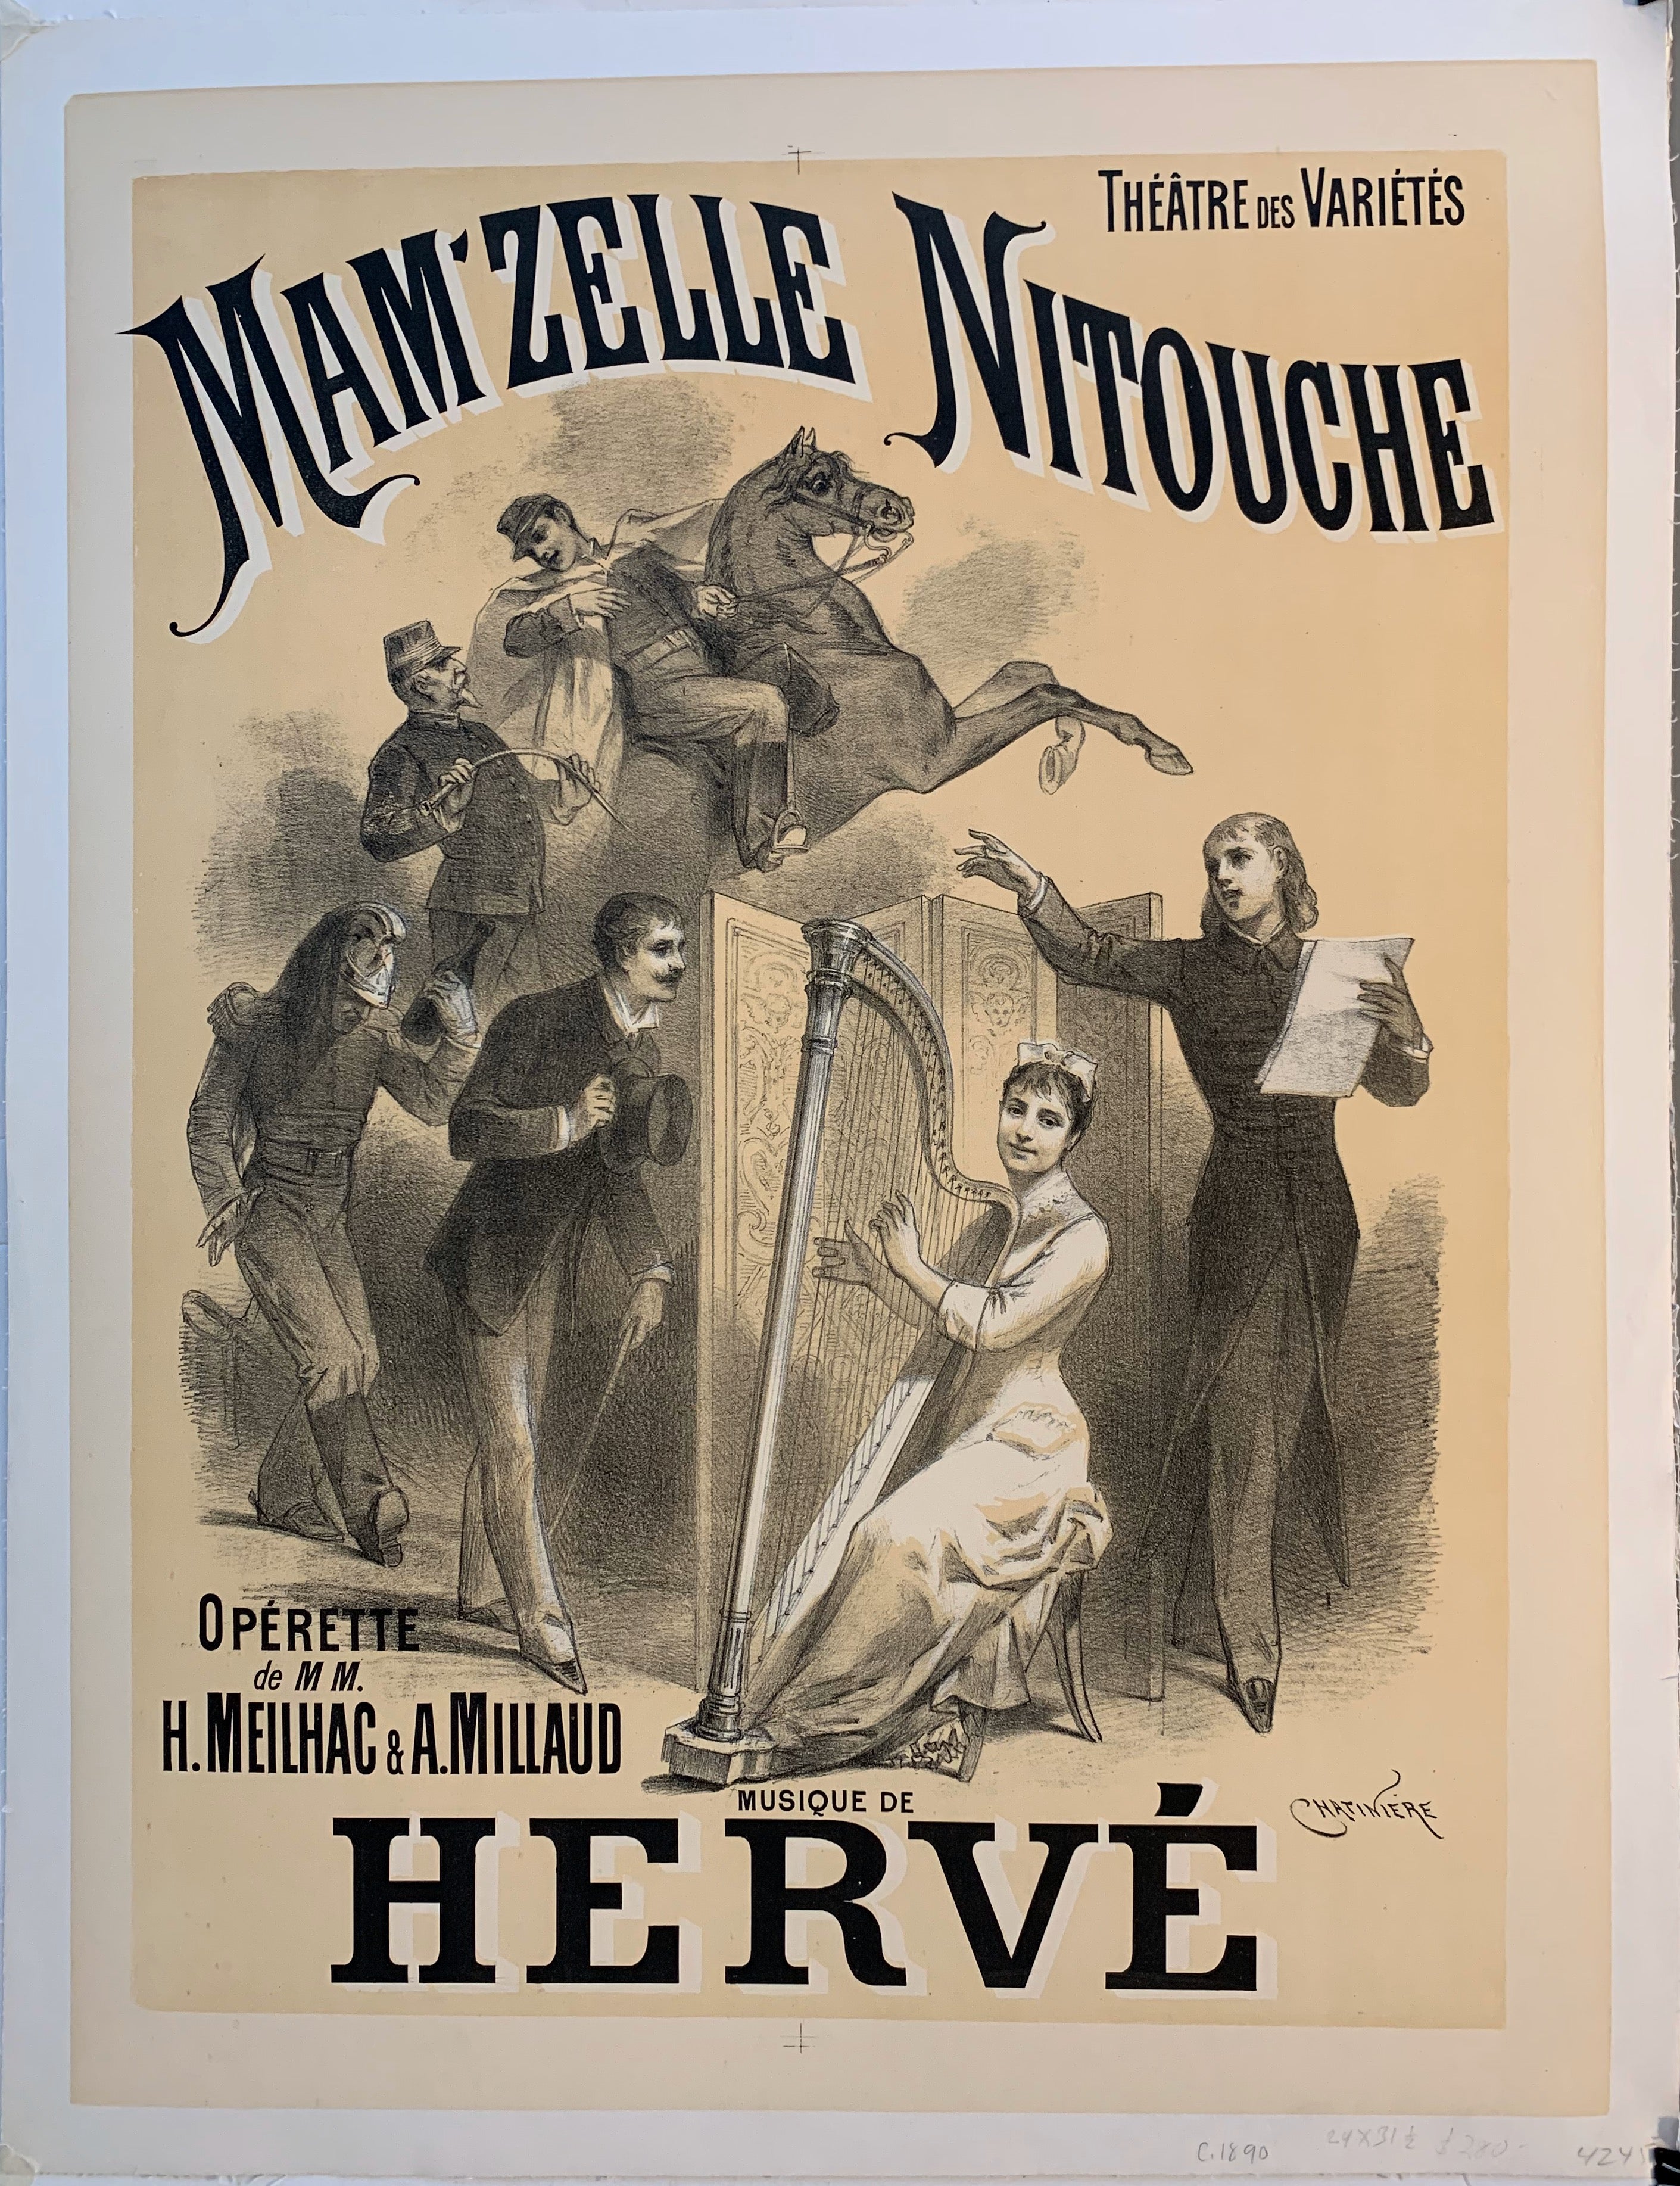 Mam'Zelle Nitouche Operette de MM H. Meilhac & A. Millaud Musique de Herve